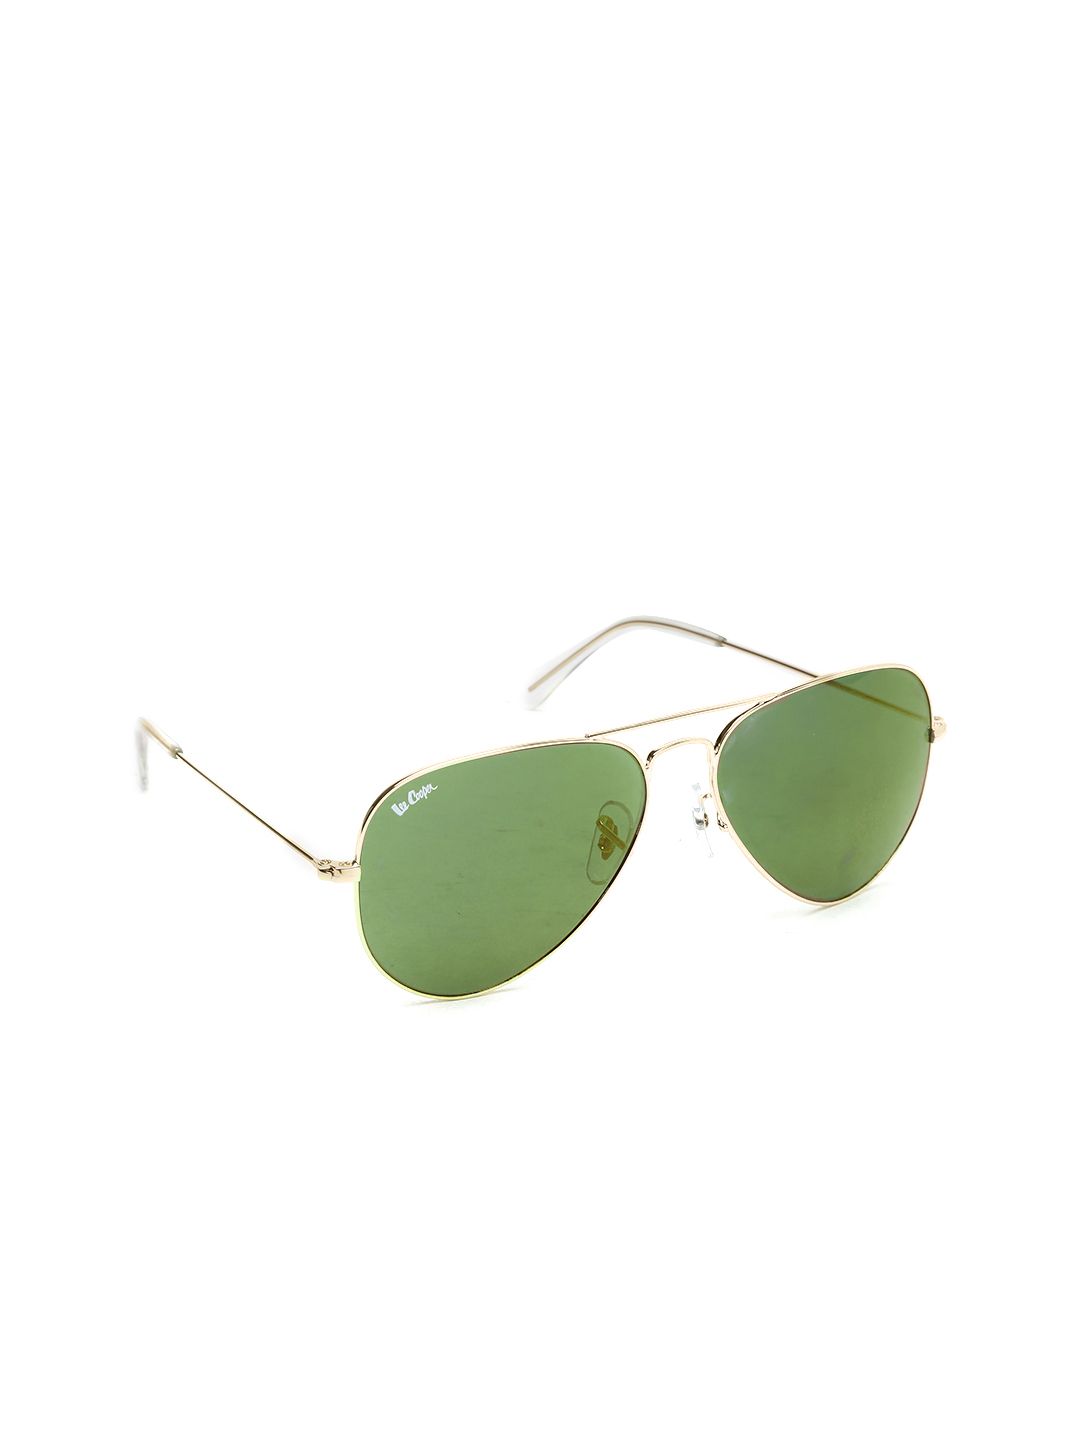 Lee Cooper Unisex Mirrored Polarised Aviator Sunglasses LC9000 Price in India